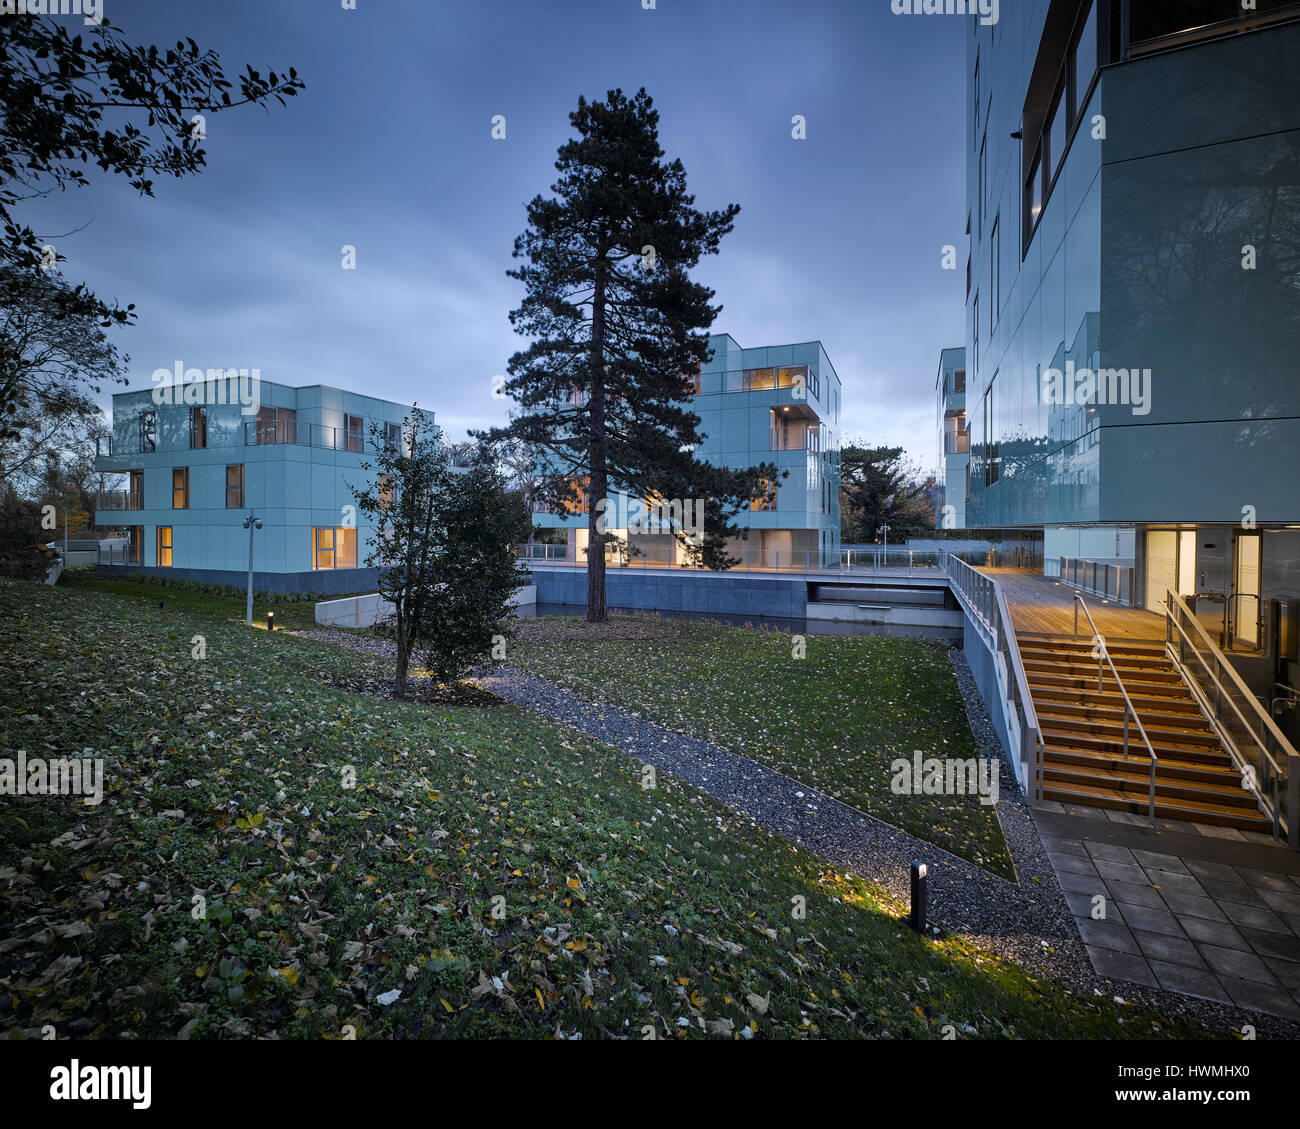 Abenddämmerung Blick von außen zeigt Licht und Landschaft. Dunluce Apartments, Ballsbridge, Irland. Architekt: Derek Tynan Architekten, 2016. Stockfoto